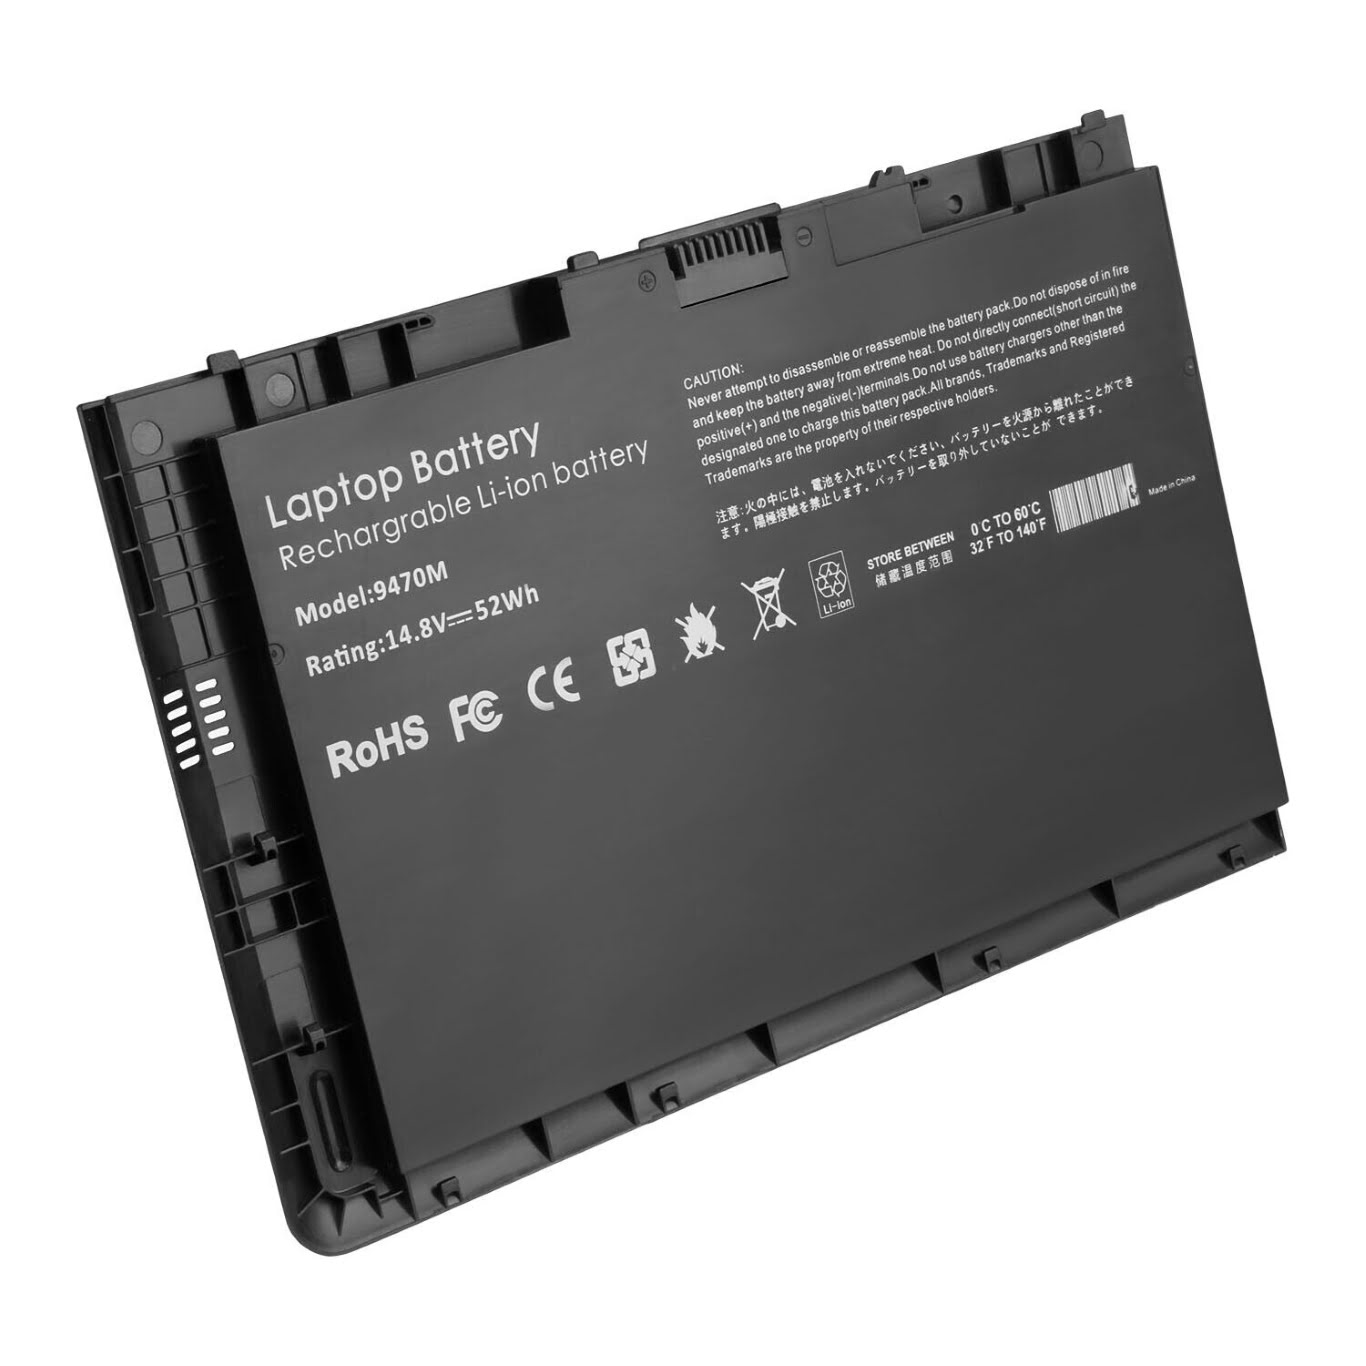 687517-121, 687517-171 replacement Laptop Battery for HP 1040 G1(E4A61AV), 1040 G1(E4A63AV), 14.8 V, 3500mah / 52wh